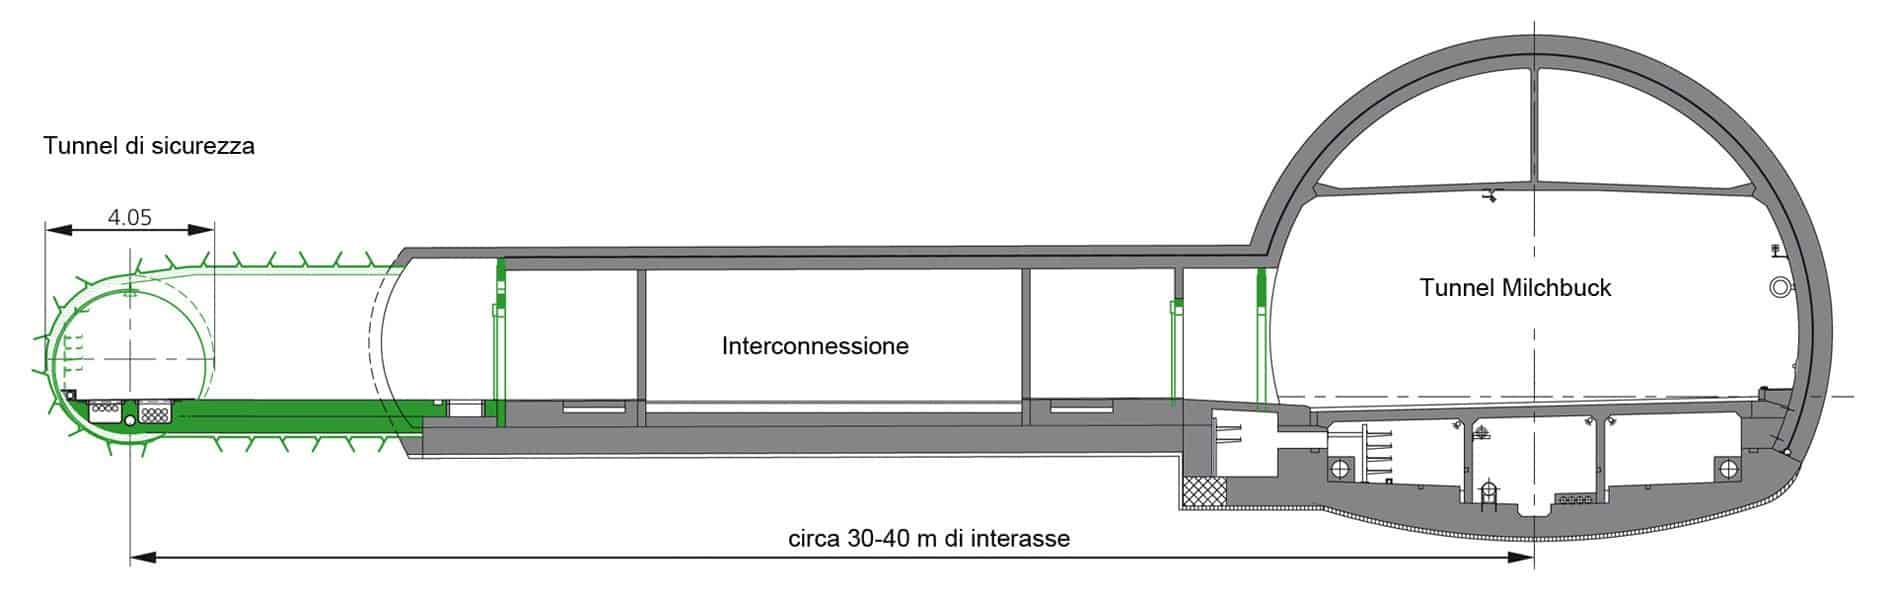 La sezione trasversale del tunnel Milchbuck e delle estensioni realizzate (galleria di sicurezza e collegamenti)